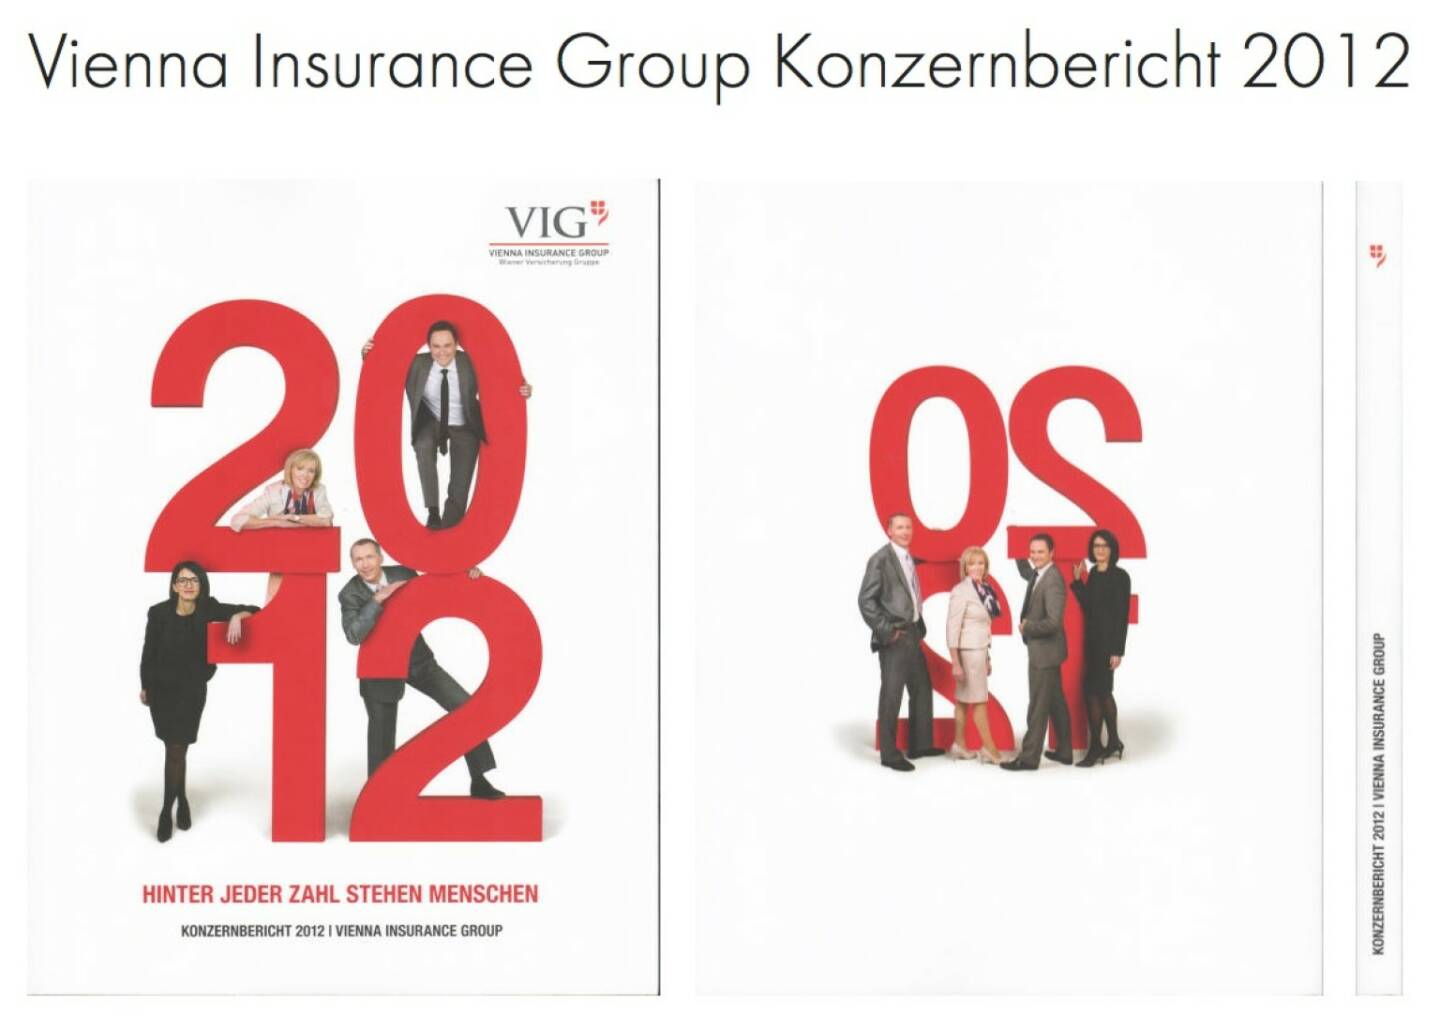 Geschäftsbericht Vienna Insurance Group http://josefchladek.com/companyreport/vienna_insurance_group_konzernbericht_2012